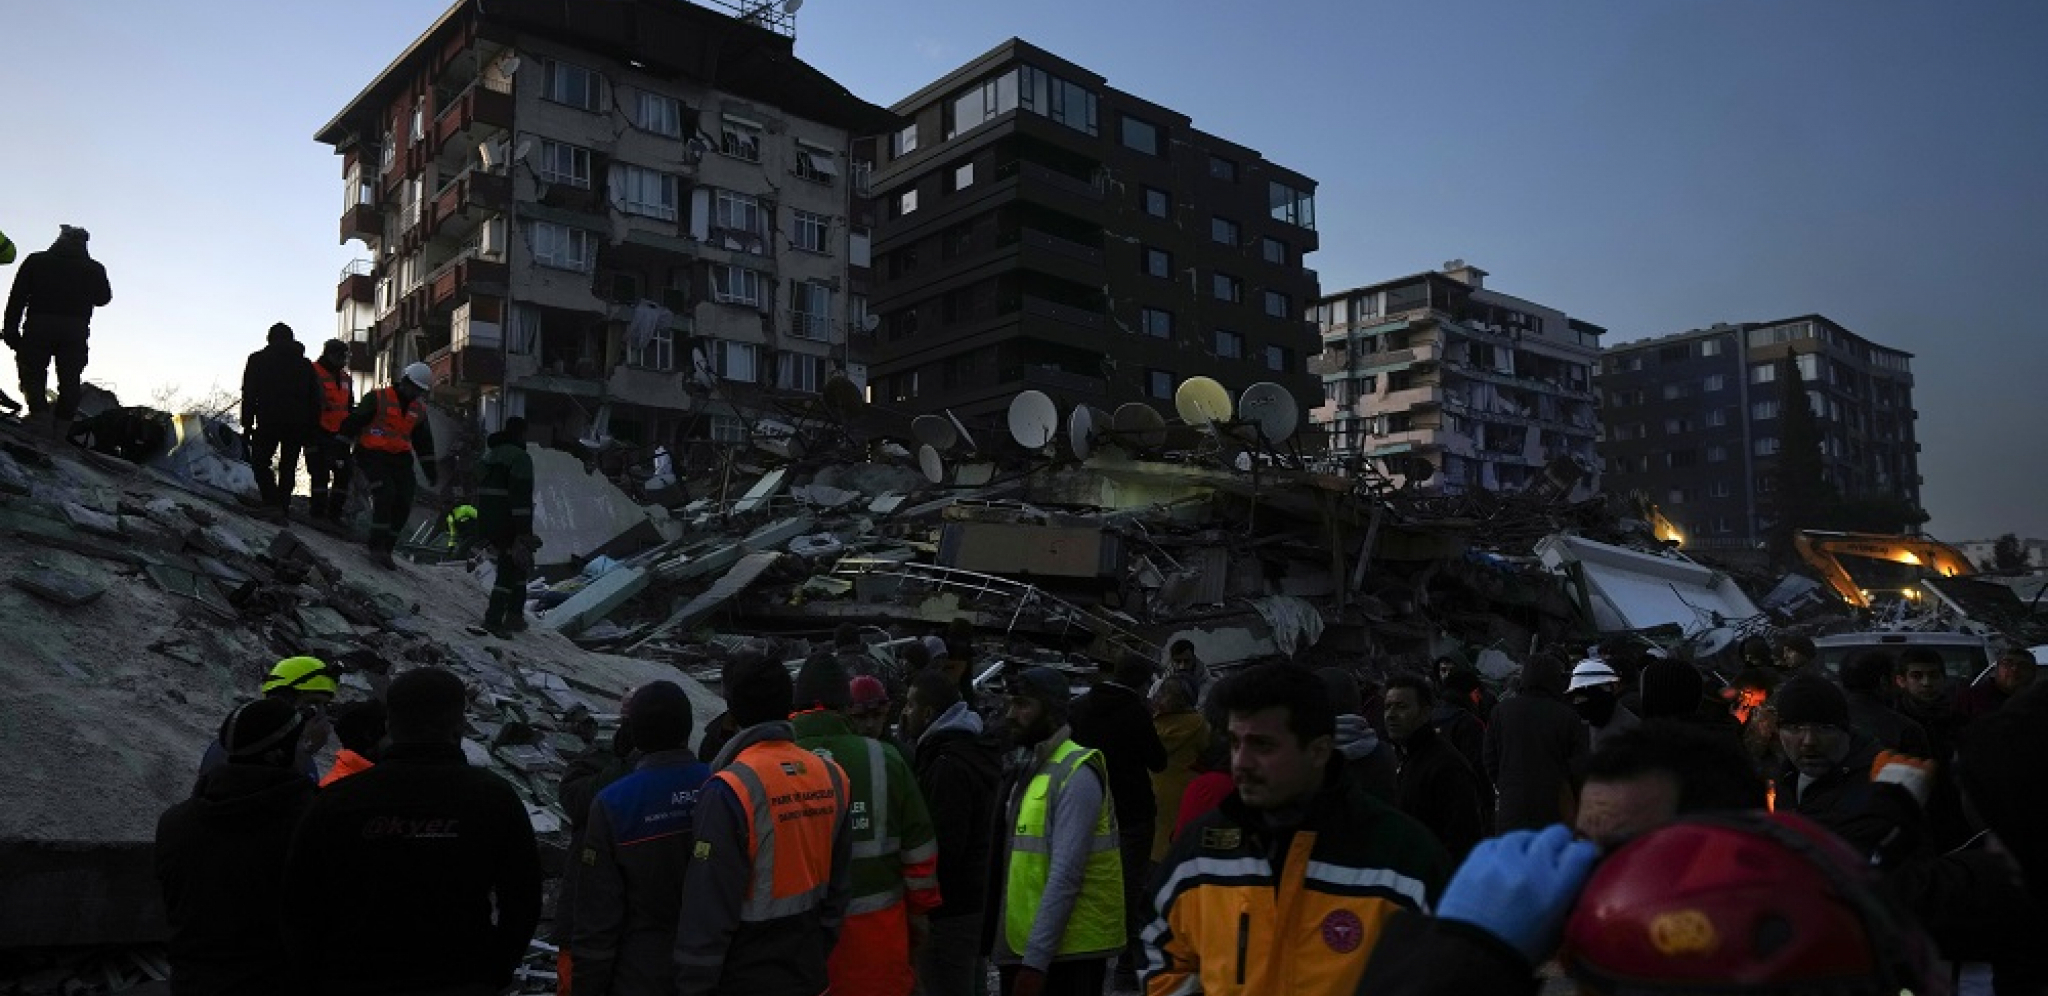 UŽASNE VESTI IZ TURSKE! Poginuo srpski dečak! Otkriveno ko je kriv za katastrofalno rušenje zgrada!